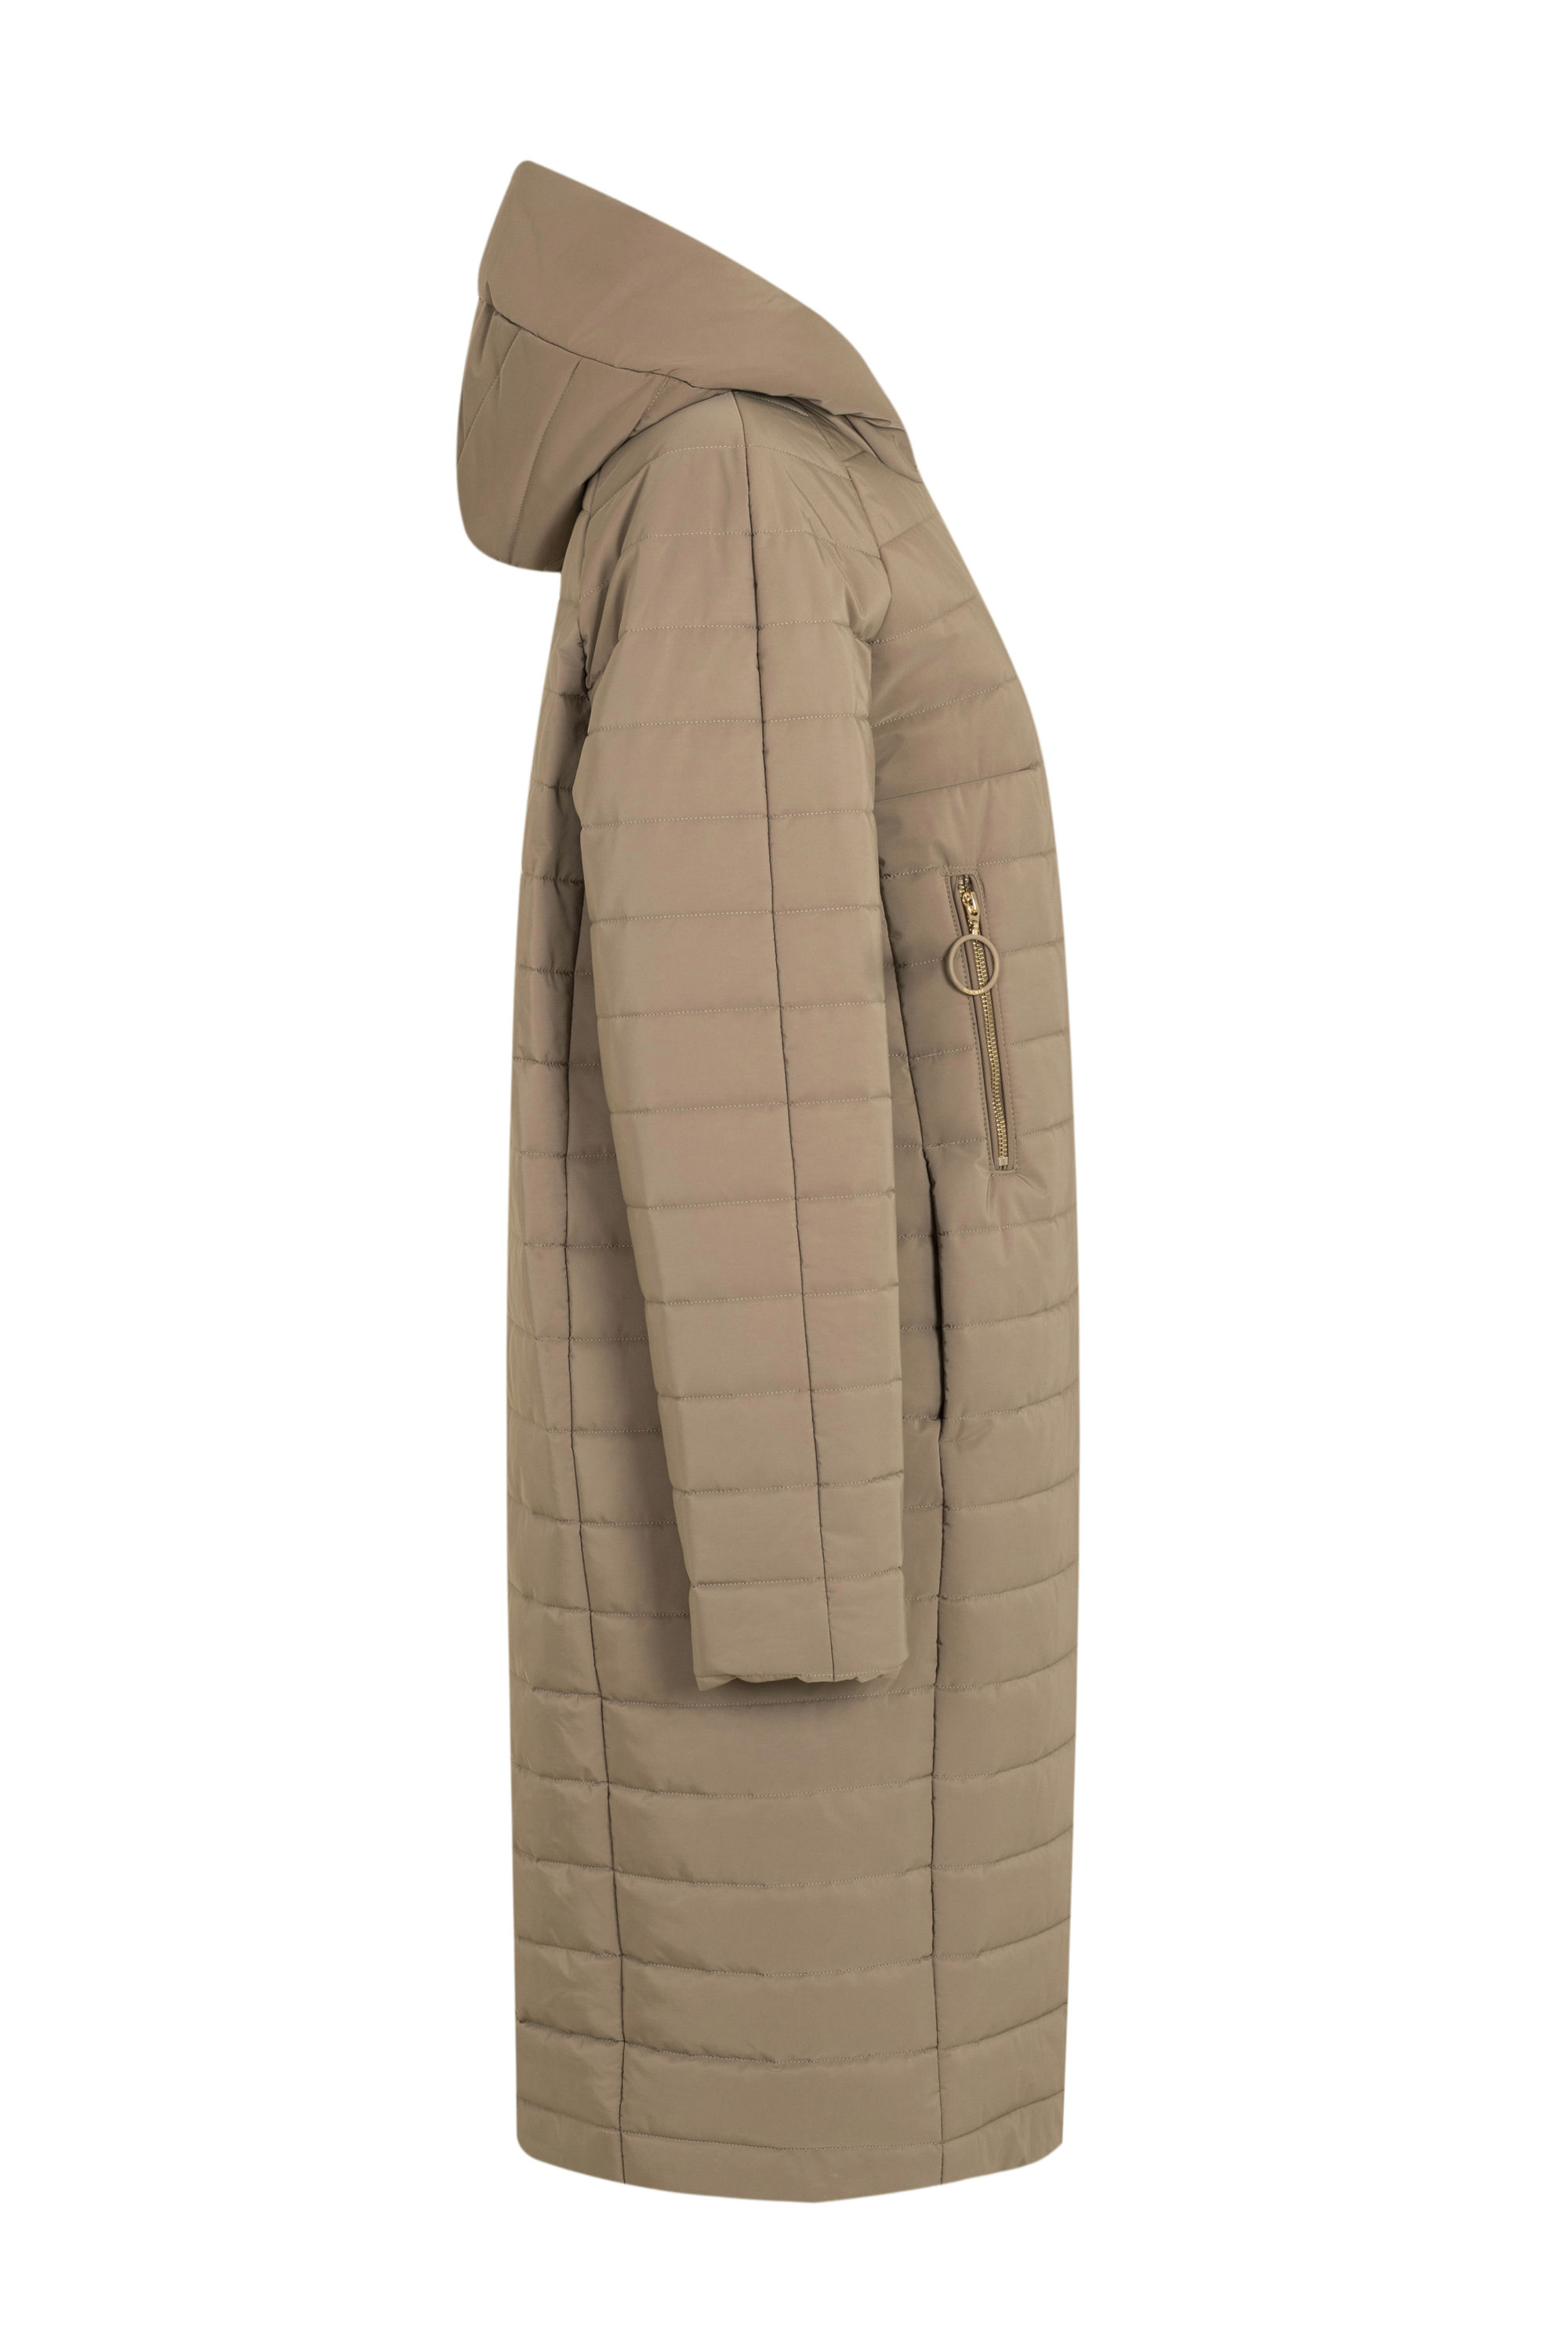 Пальто женское плащевое утепленное 5-10652-2